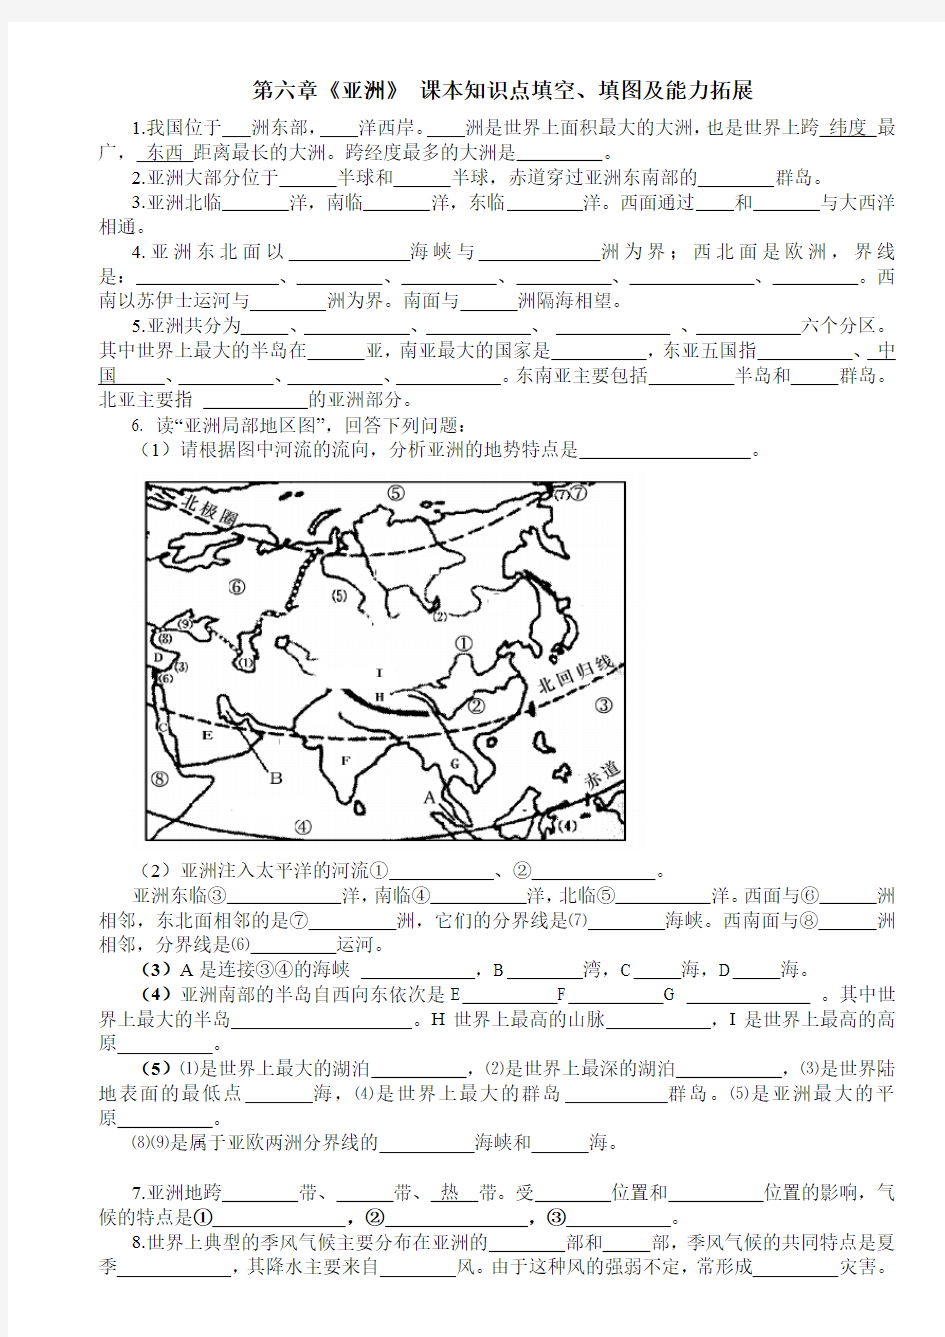 人教版七年级地理第六章《亚洲》 课本知识点填空、填图及能力拓展(附答案)